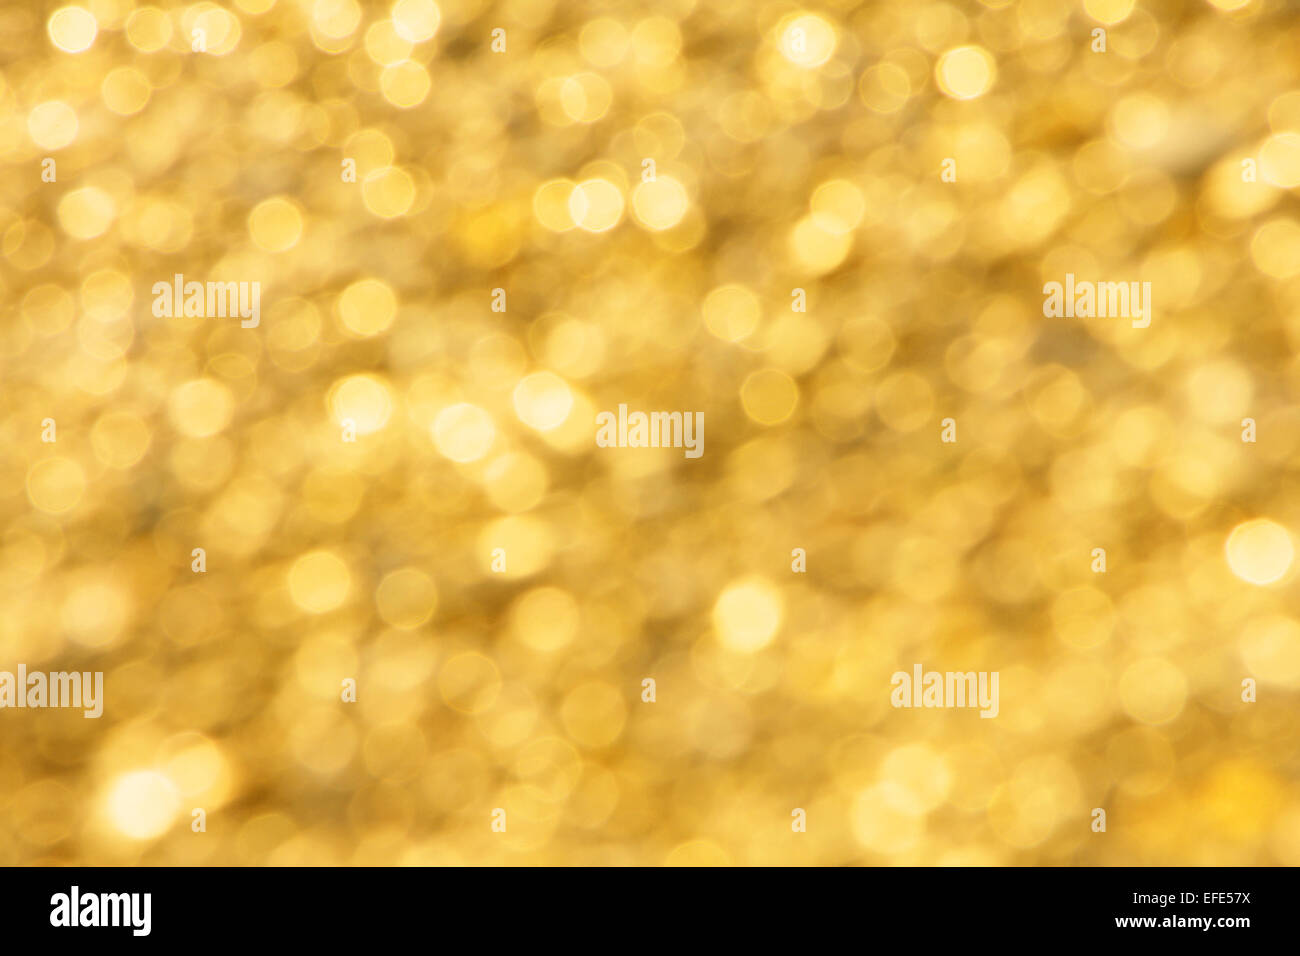 Golden light background Stock Photo